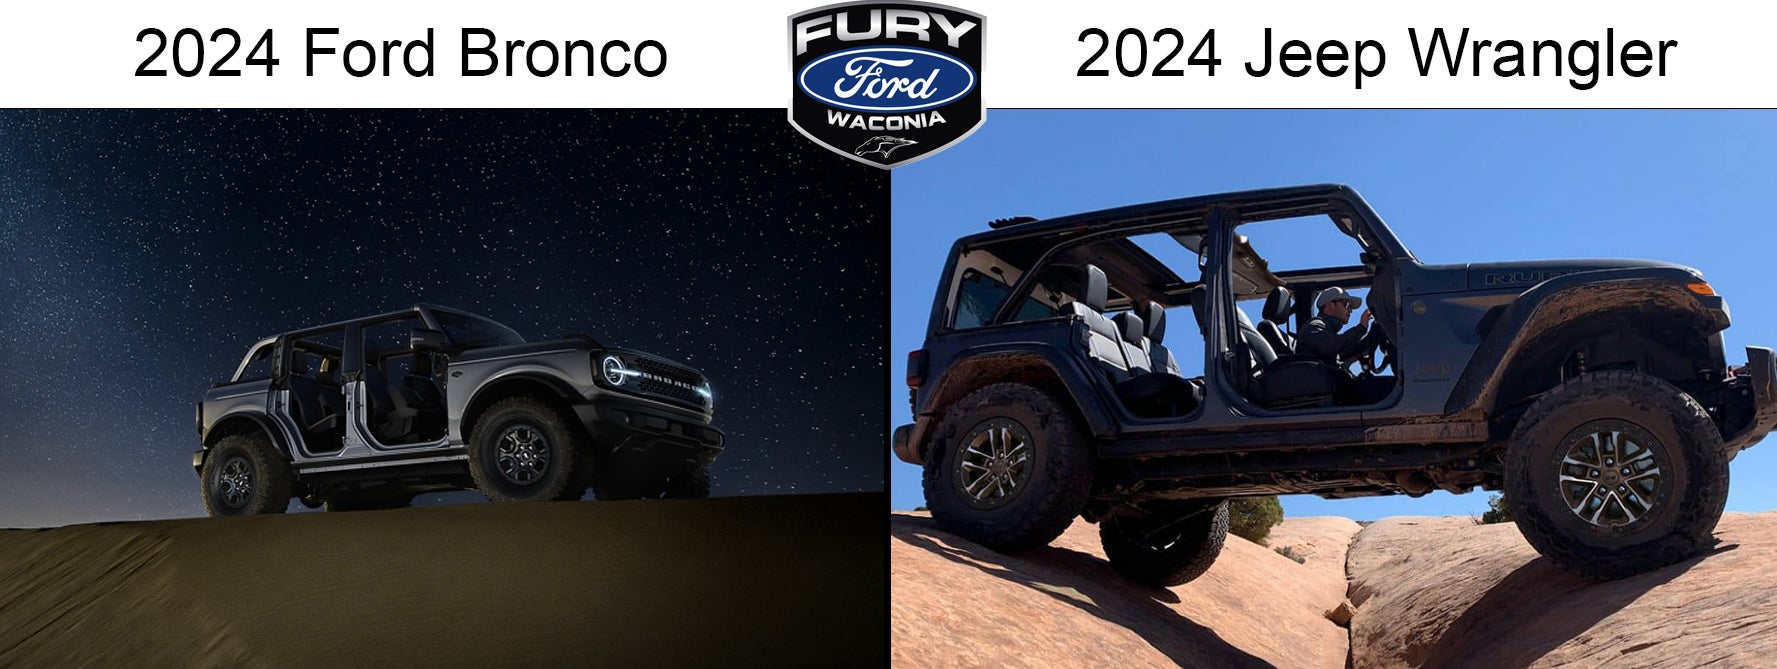 2024 ford bronco vs. the 2024 jeep wrangler